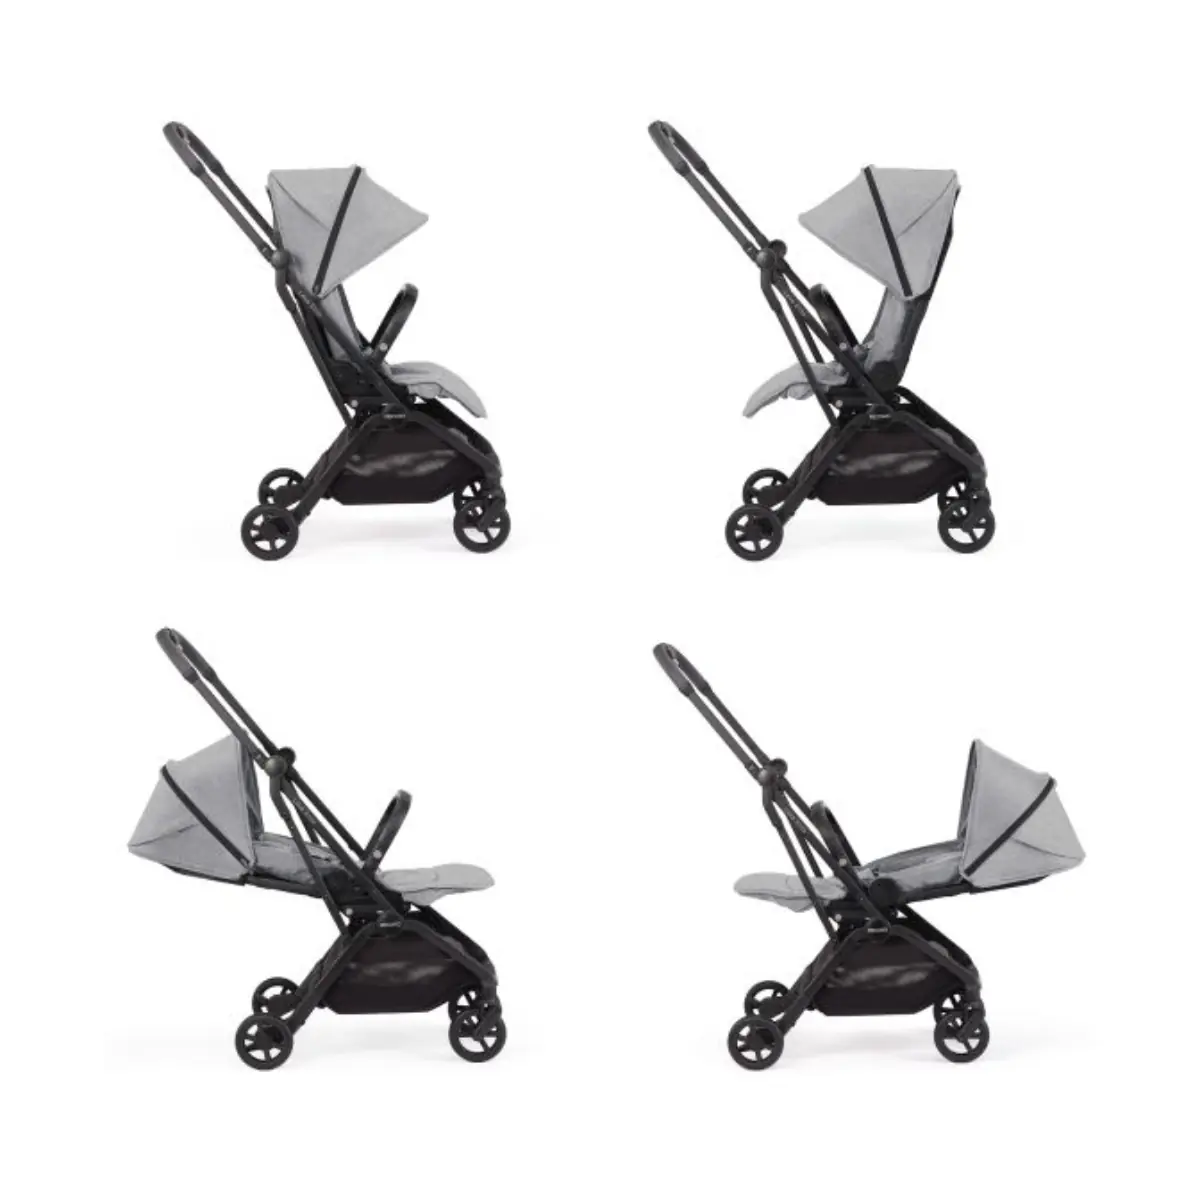 Recaro Lexa Elite Prime Compact Fold Stroller - Silent Grey